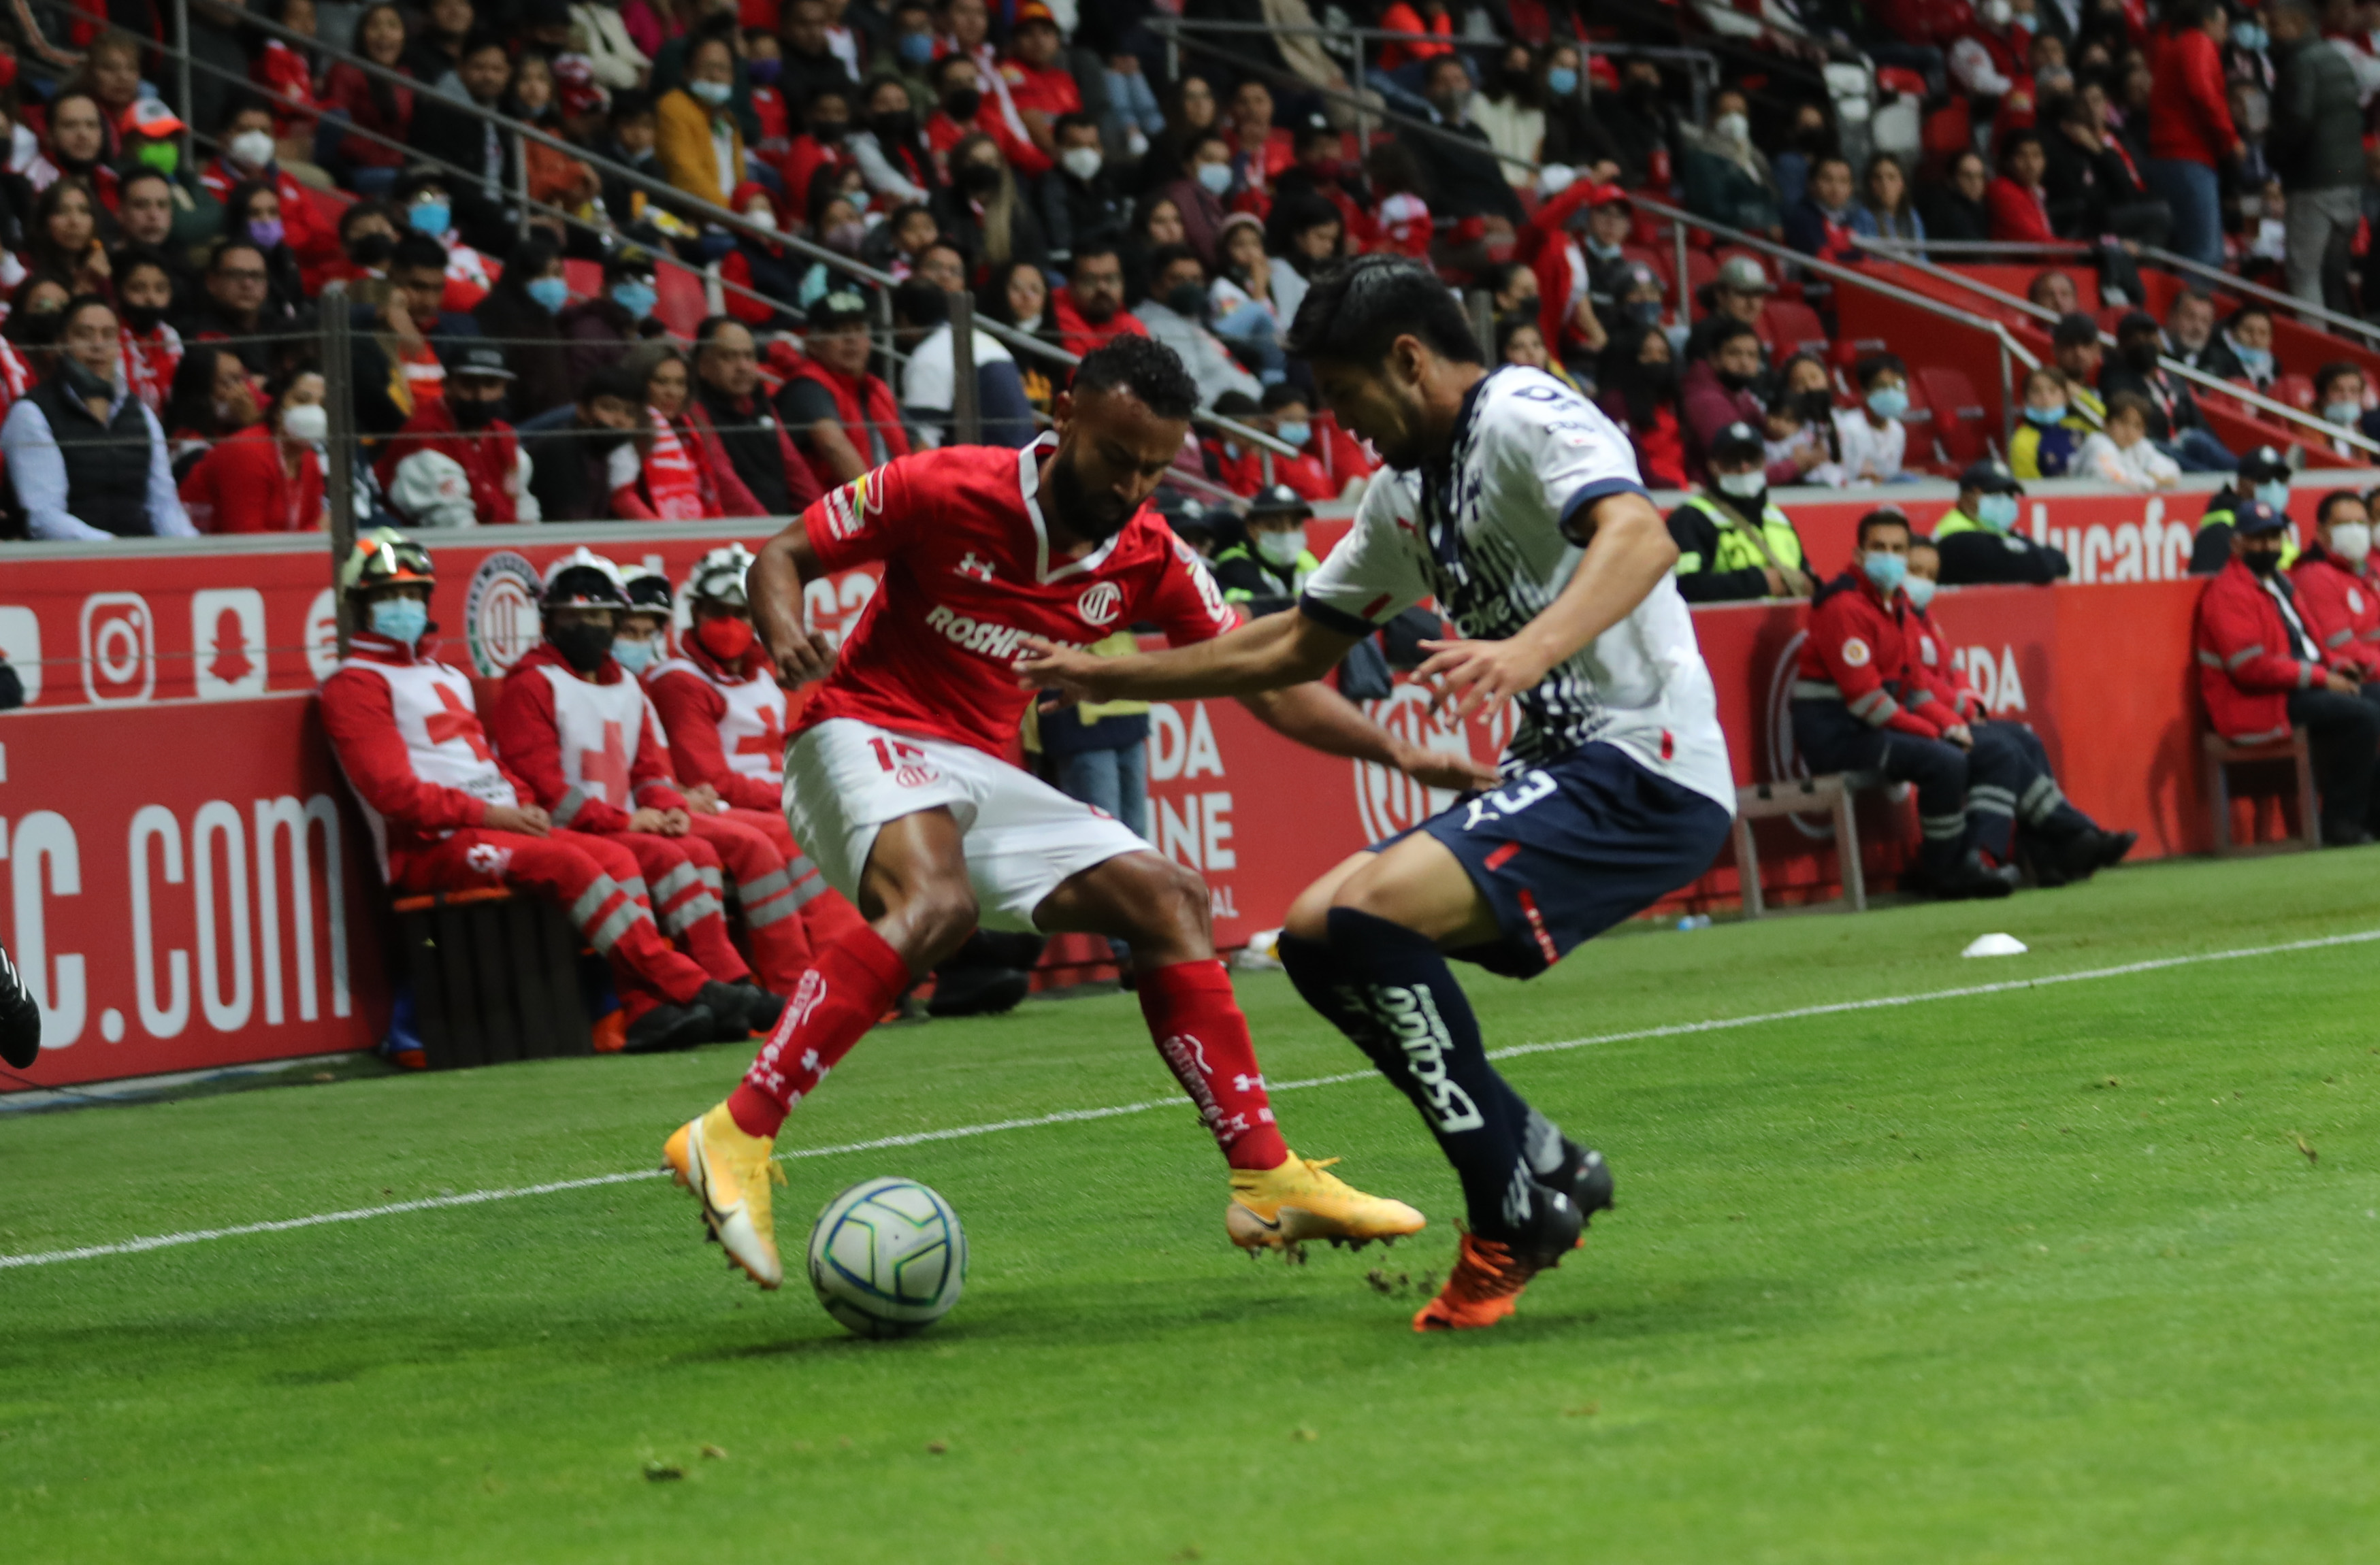 Rayados de Monterrey sacó el empate 1-1 en su visita a los Diablos Rojos